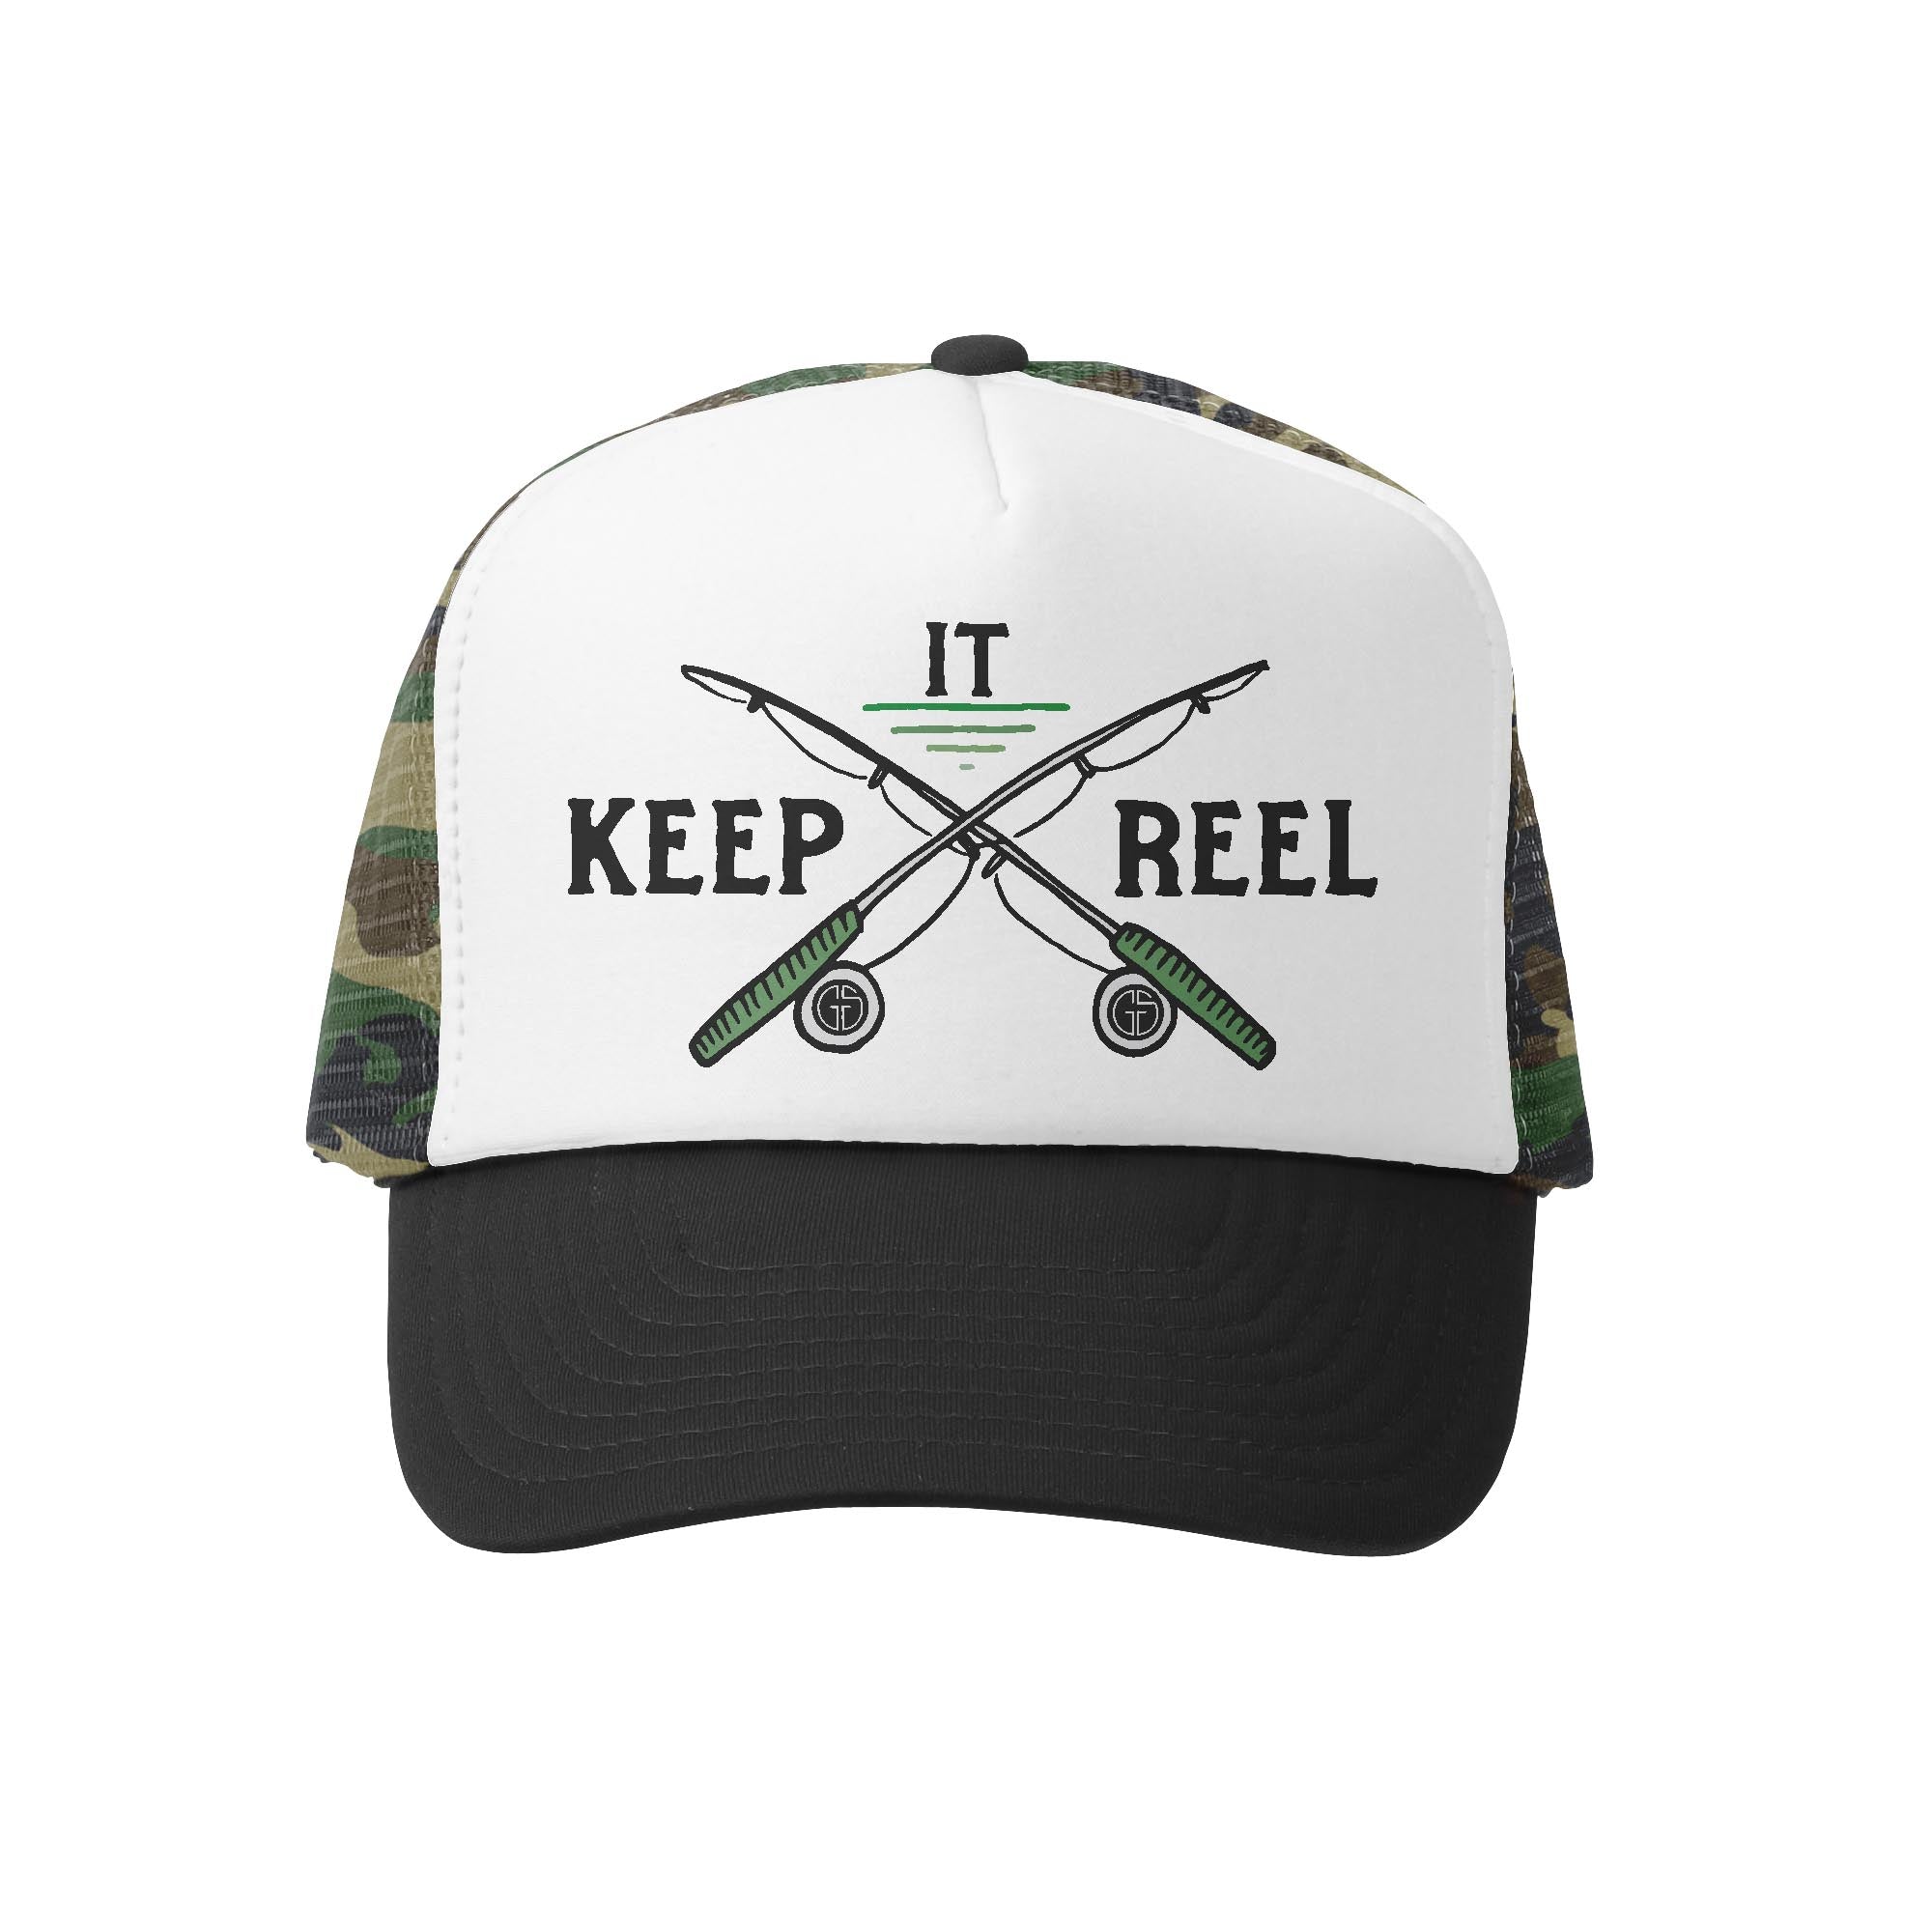 Keep It Reel – gromsquadusa